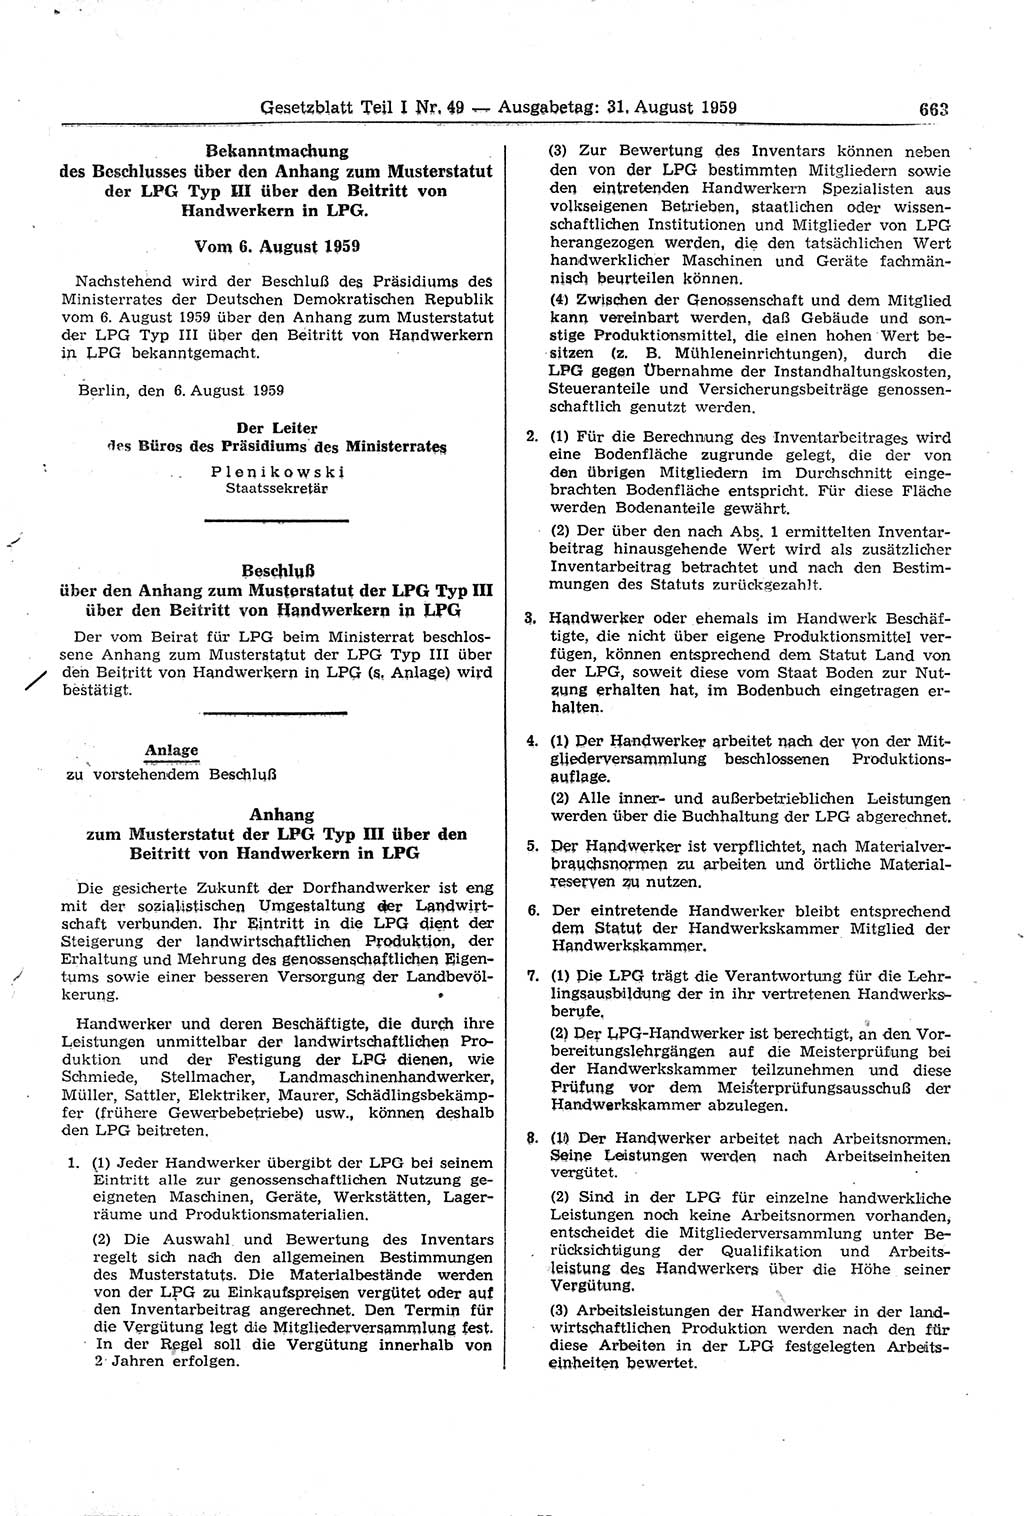 Gesetzblatt (GBl.) der Deutschen Demokratischen Republik (DDR) Teil Ⅰ 1959, Seite 663 (GBl. DDR Ⅰ 1959, S. 663)